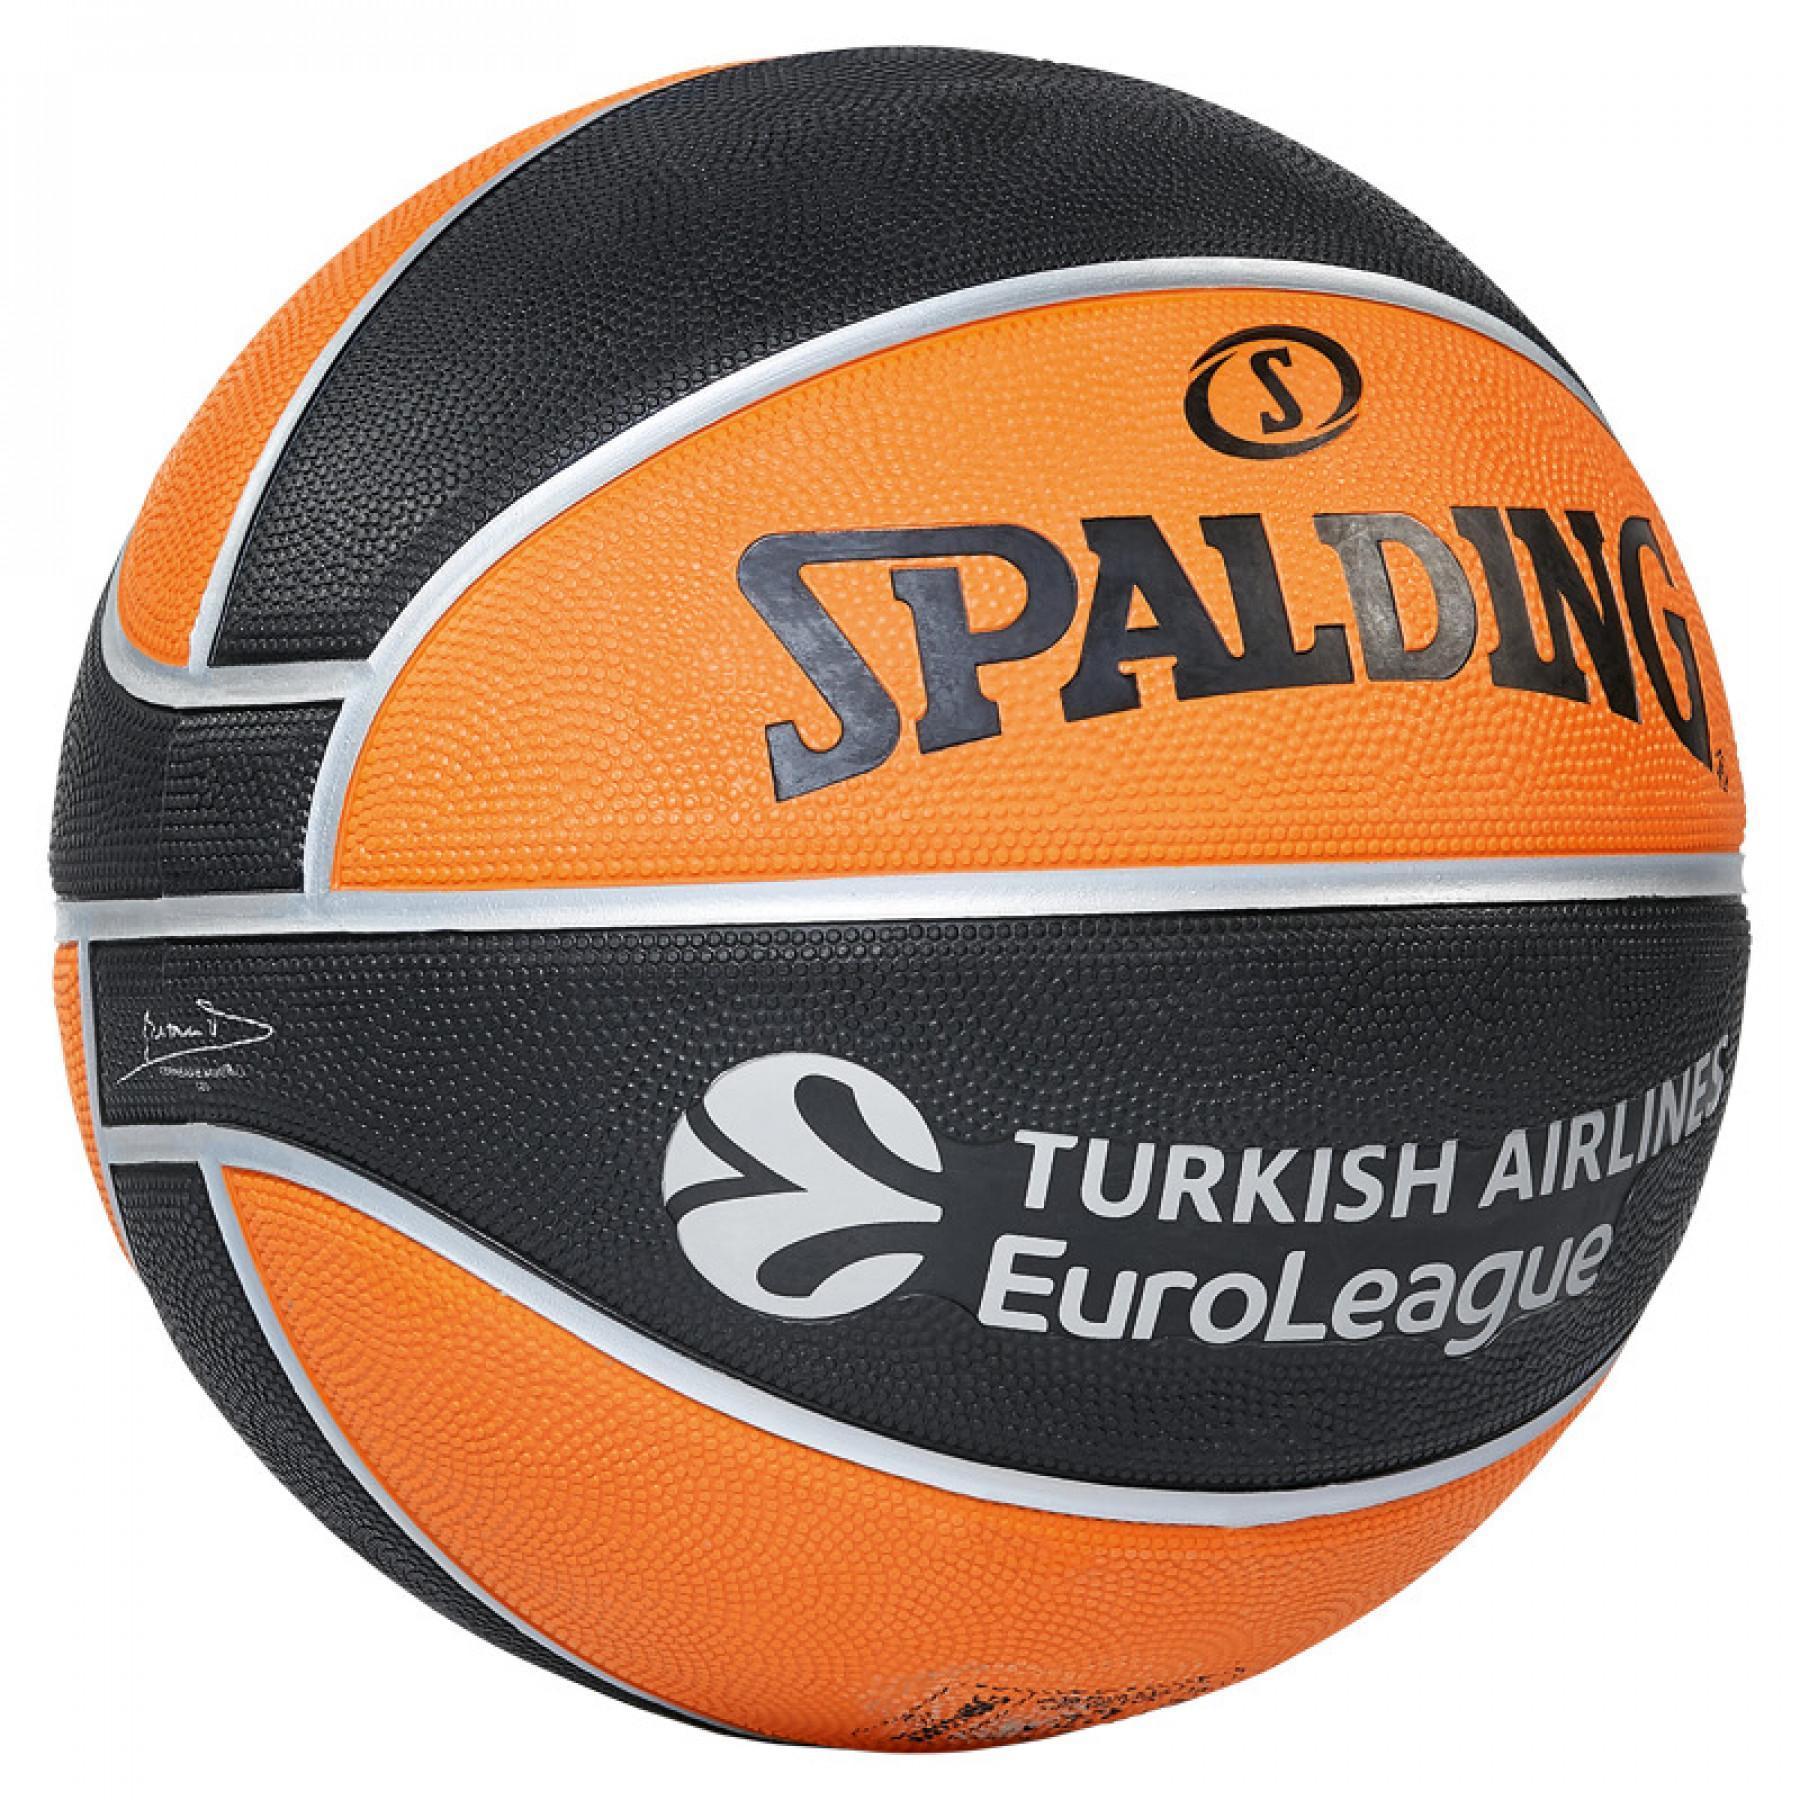 Balon Spalding Euroleague Tf150 Outdoor (84-001z)